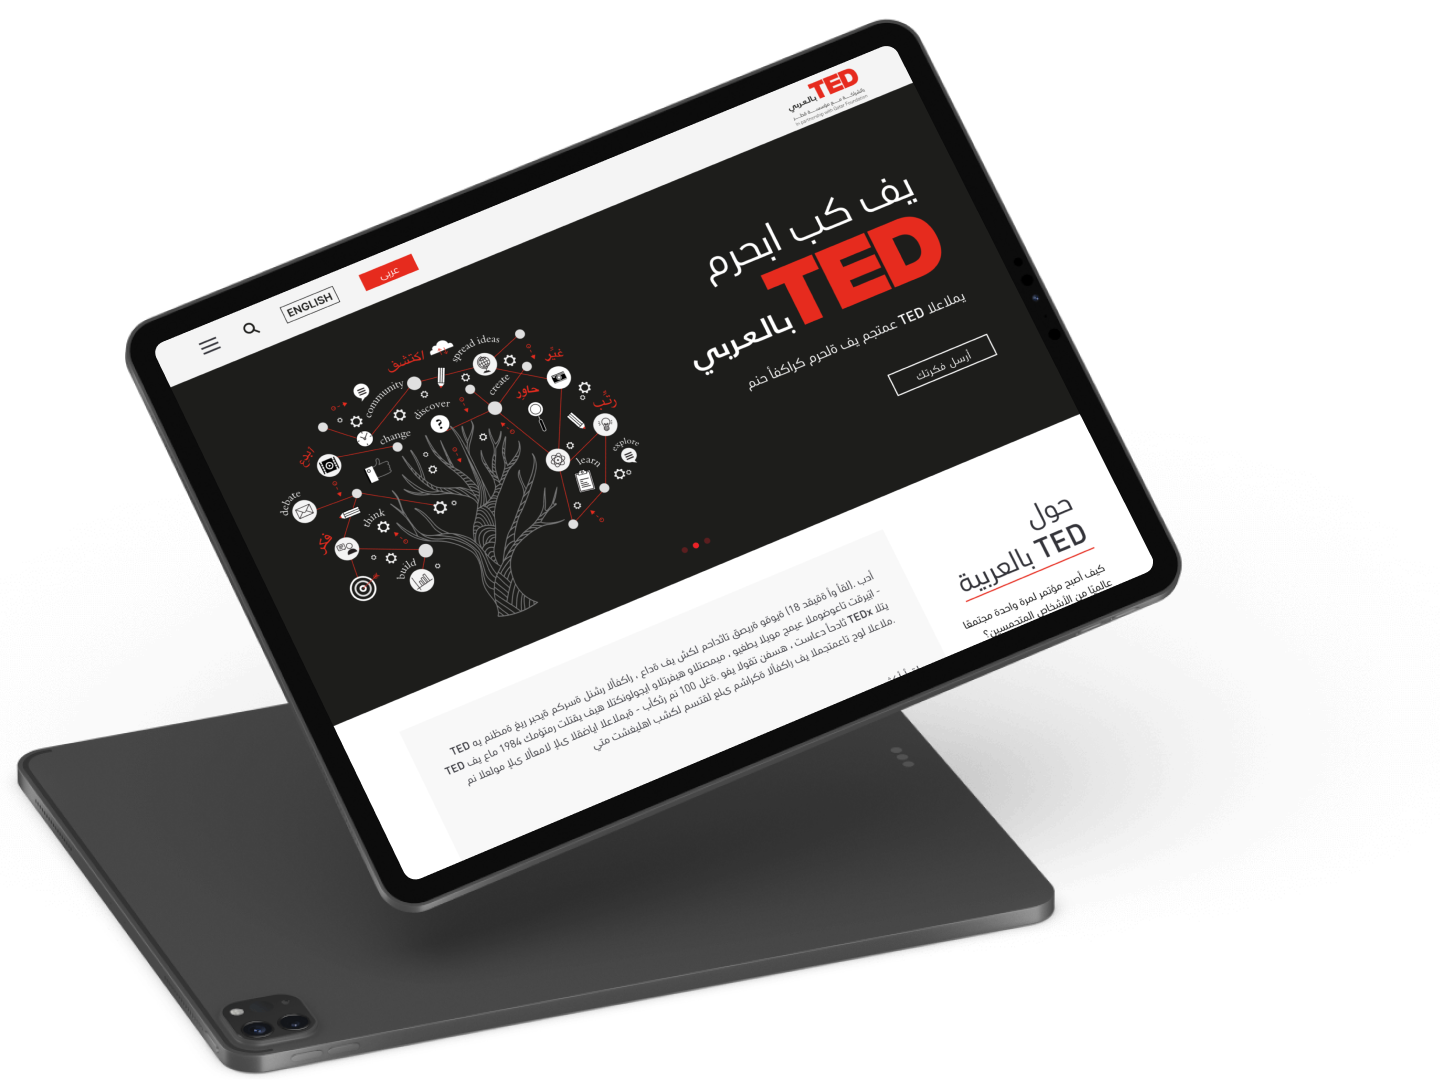 TED UI Design